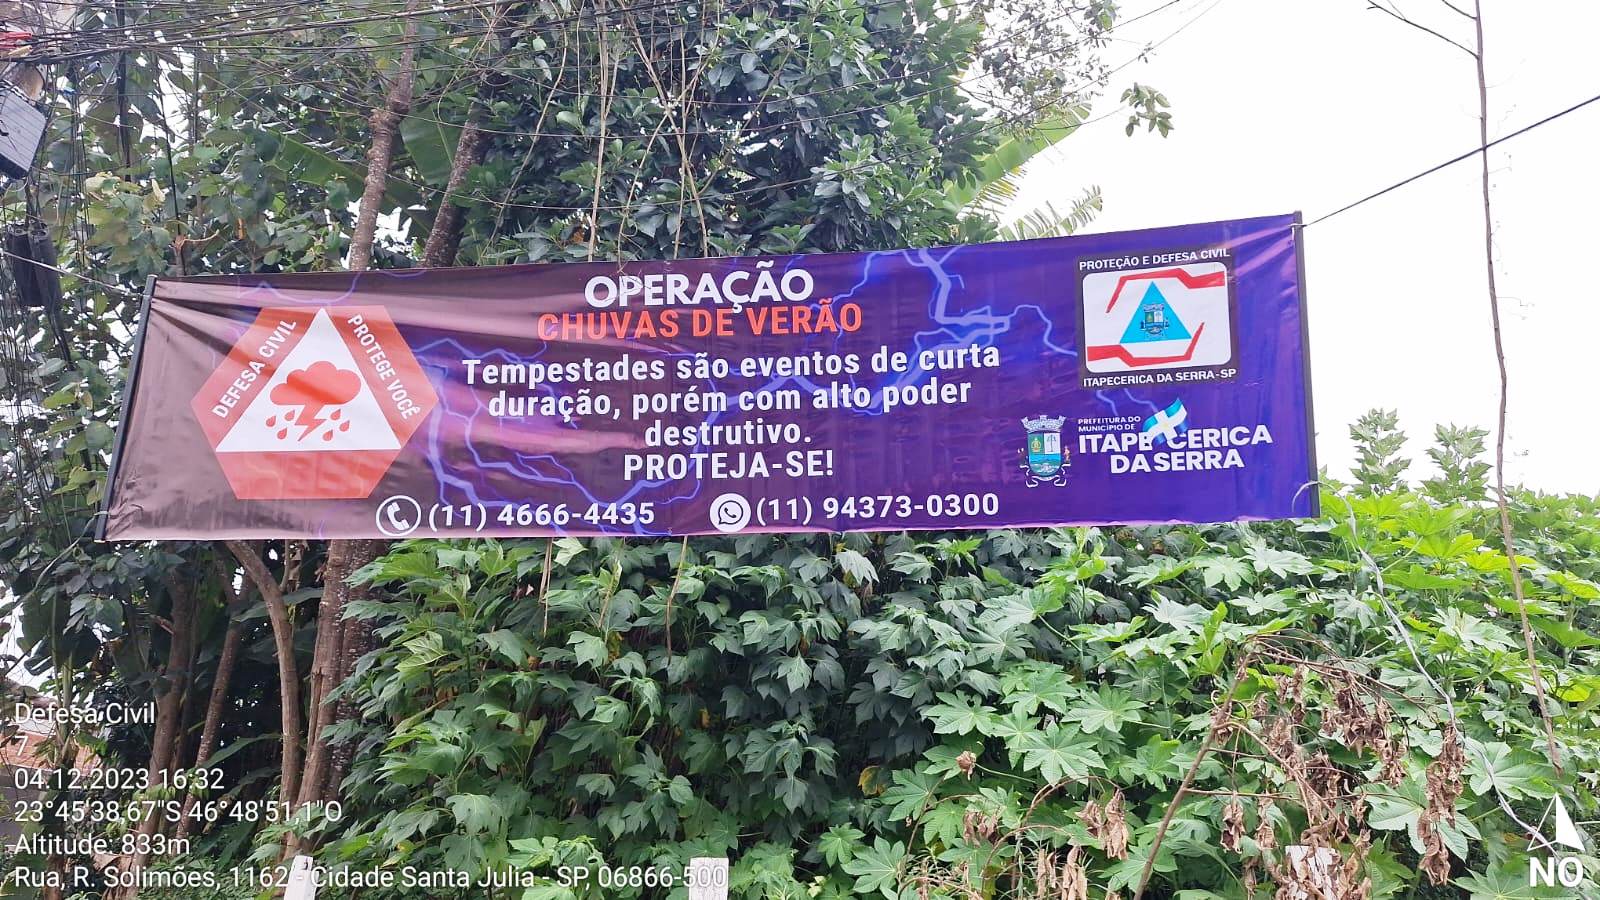 Defesa Civil de Itapecerica da Serra inicia Operação Chuvas de Verão com campanha de conscientização